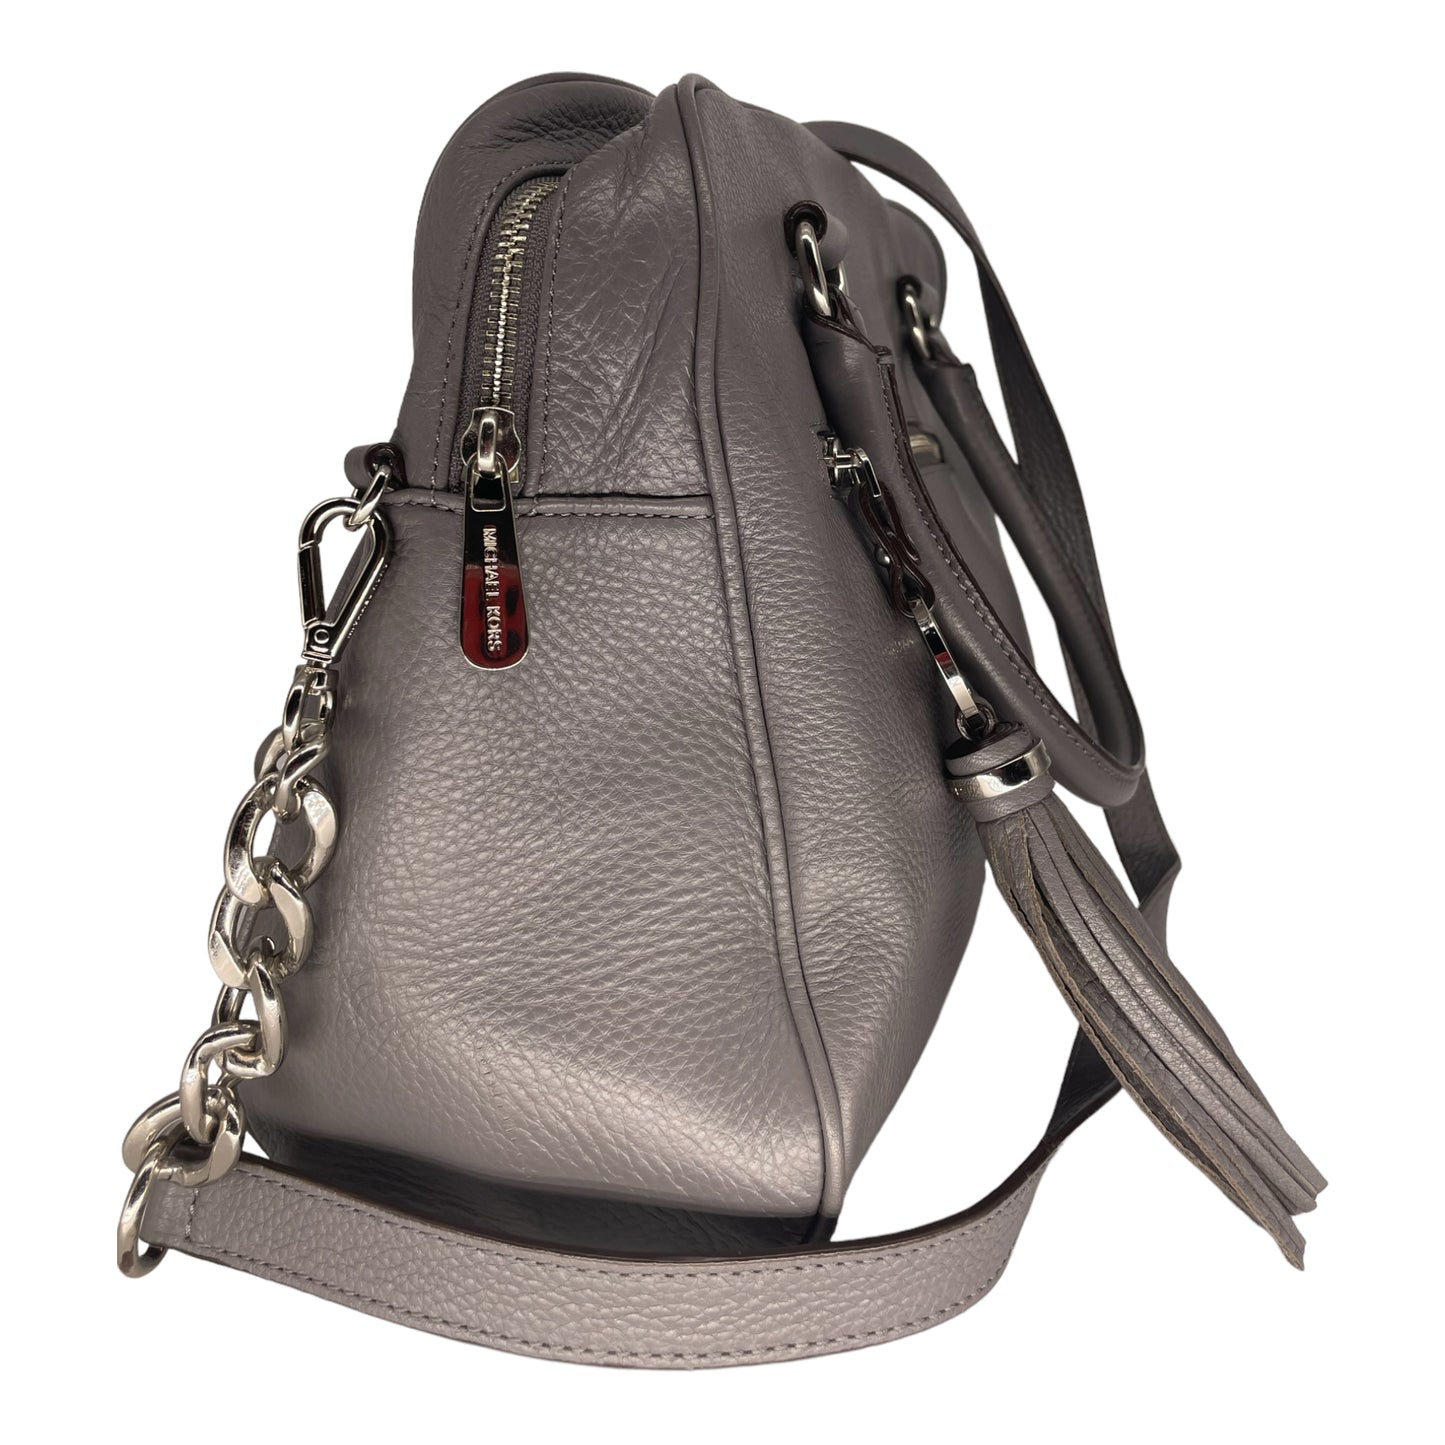 Michael Kors Knox Tassel Large Satchel Leather Handbag